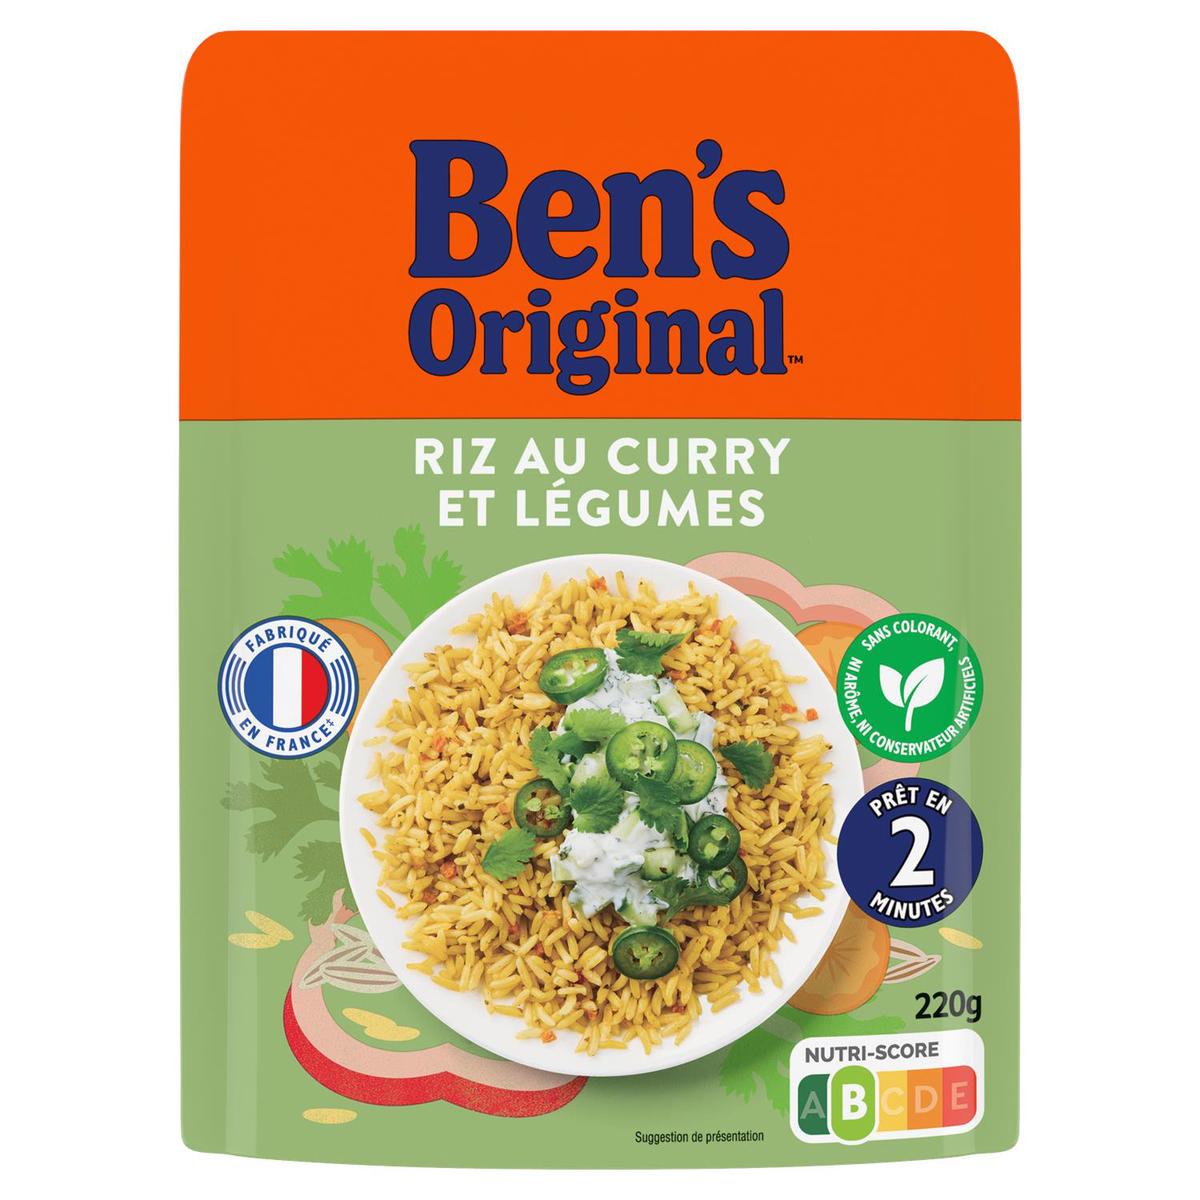 BEN'S ORIGINAL riz long grain 4x125g